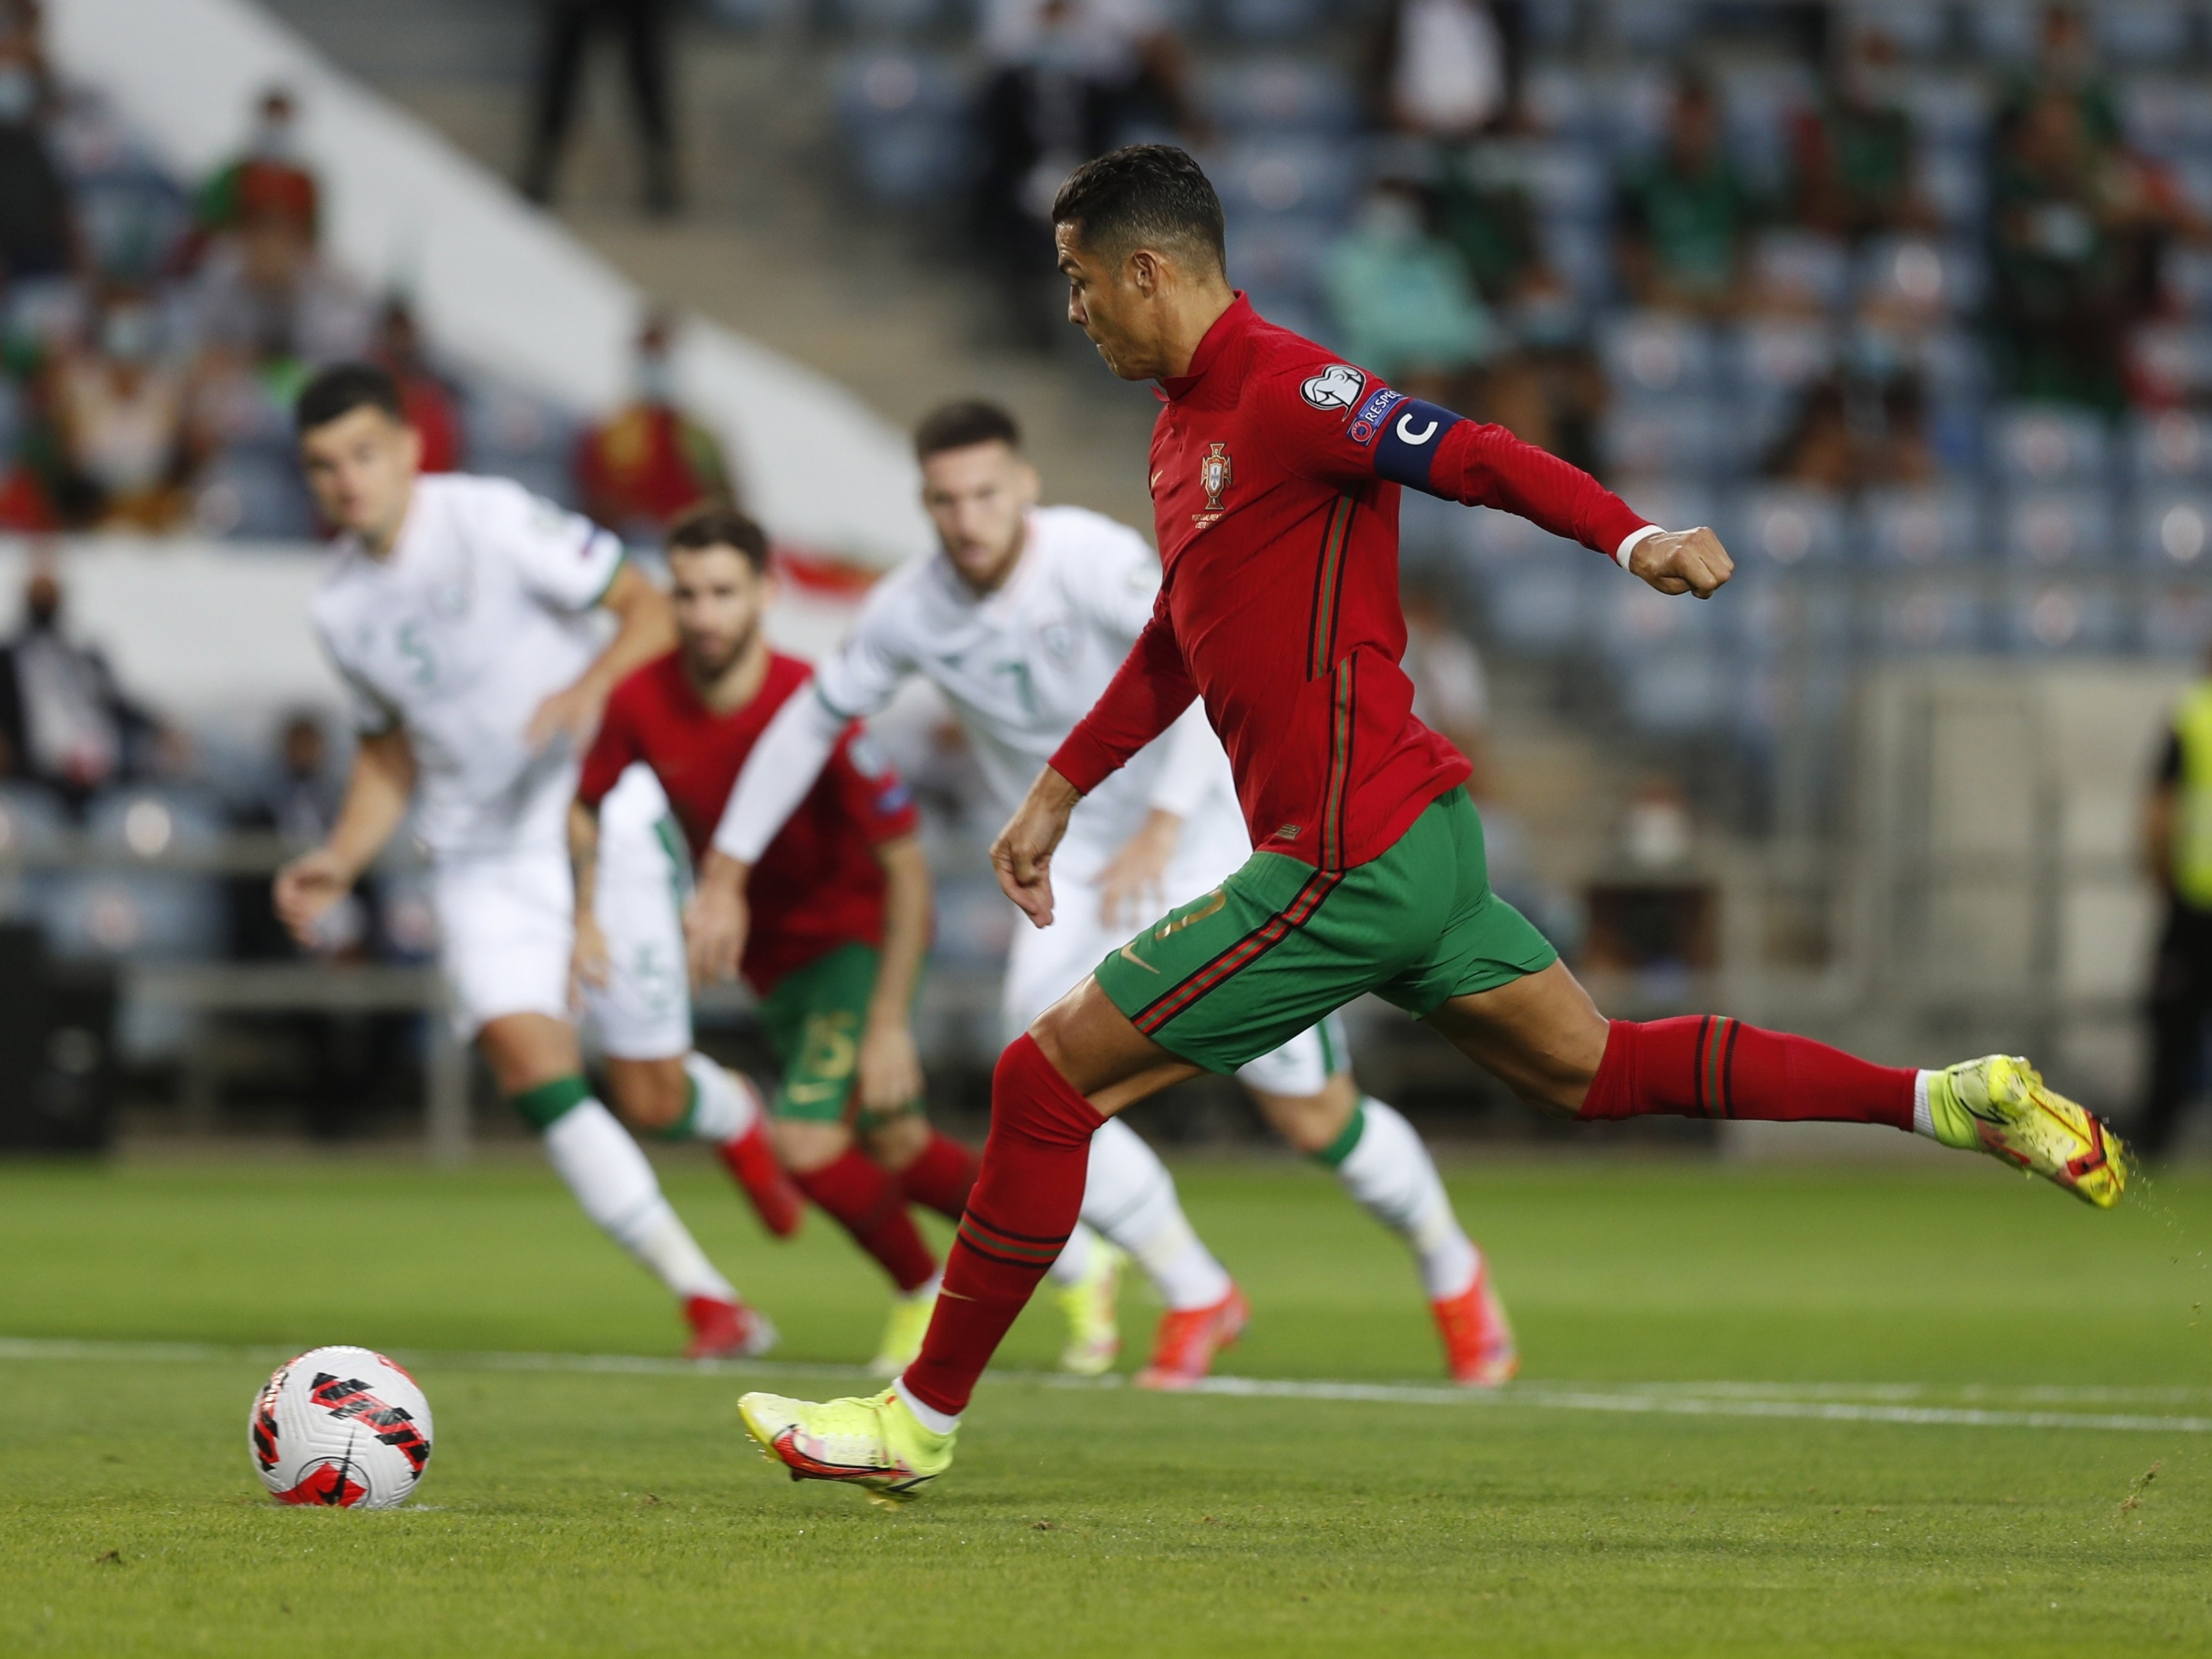 CR7 chega a 200 jogos por Portugal e descarta parar: 'Sempre um sonho